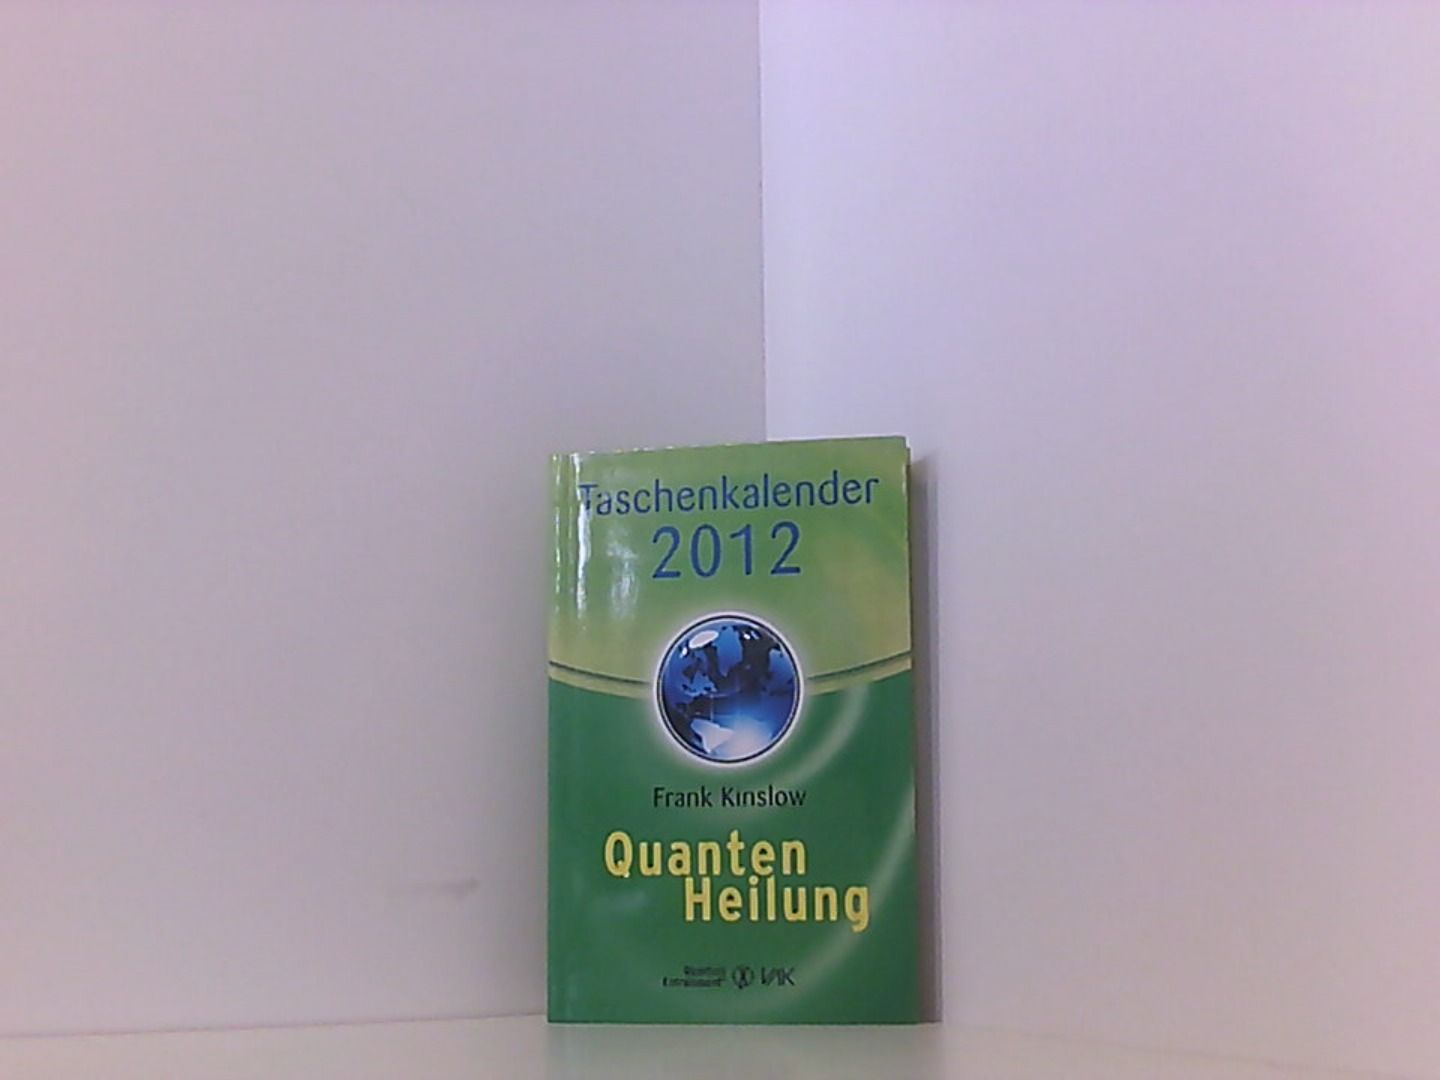 Quantenheilung-Taschenkalender 2012 - Kinslow, Frank und Beate Brandt